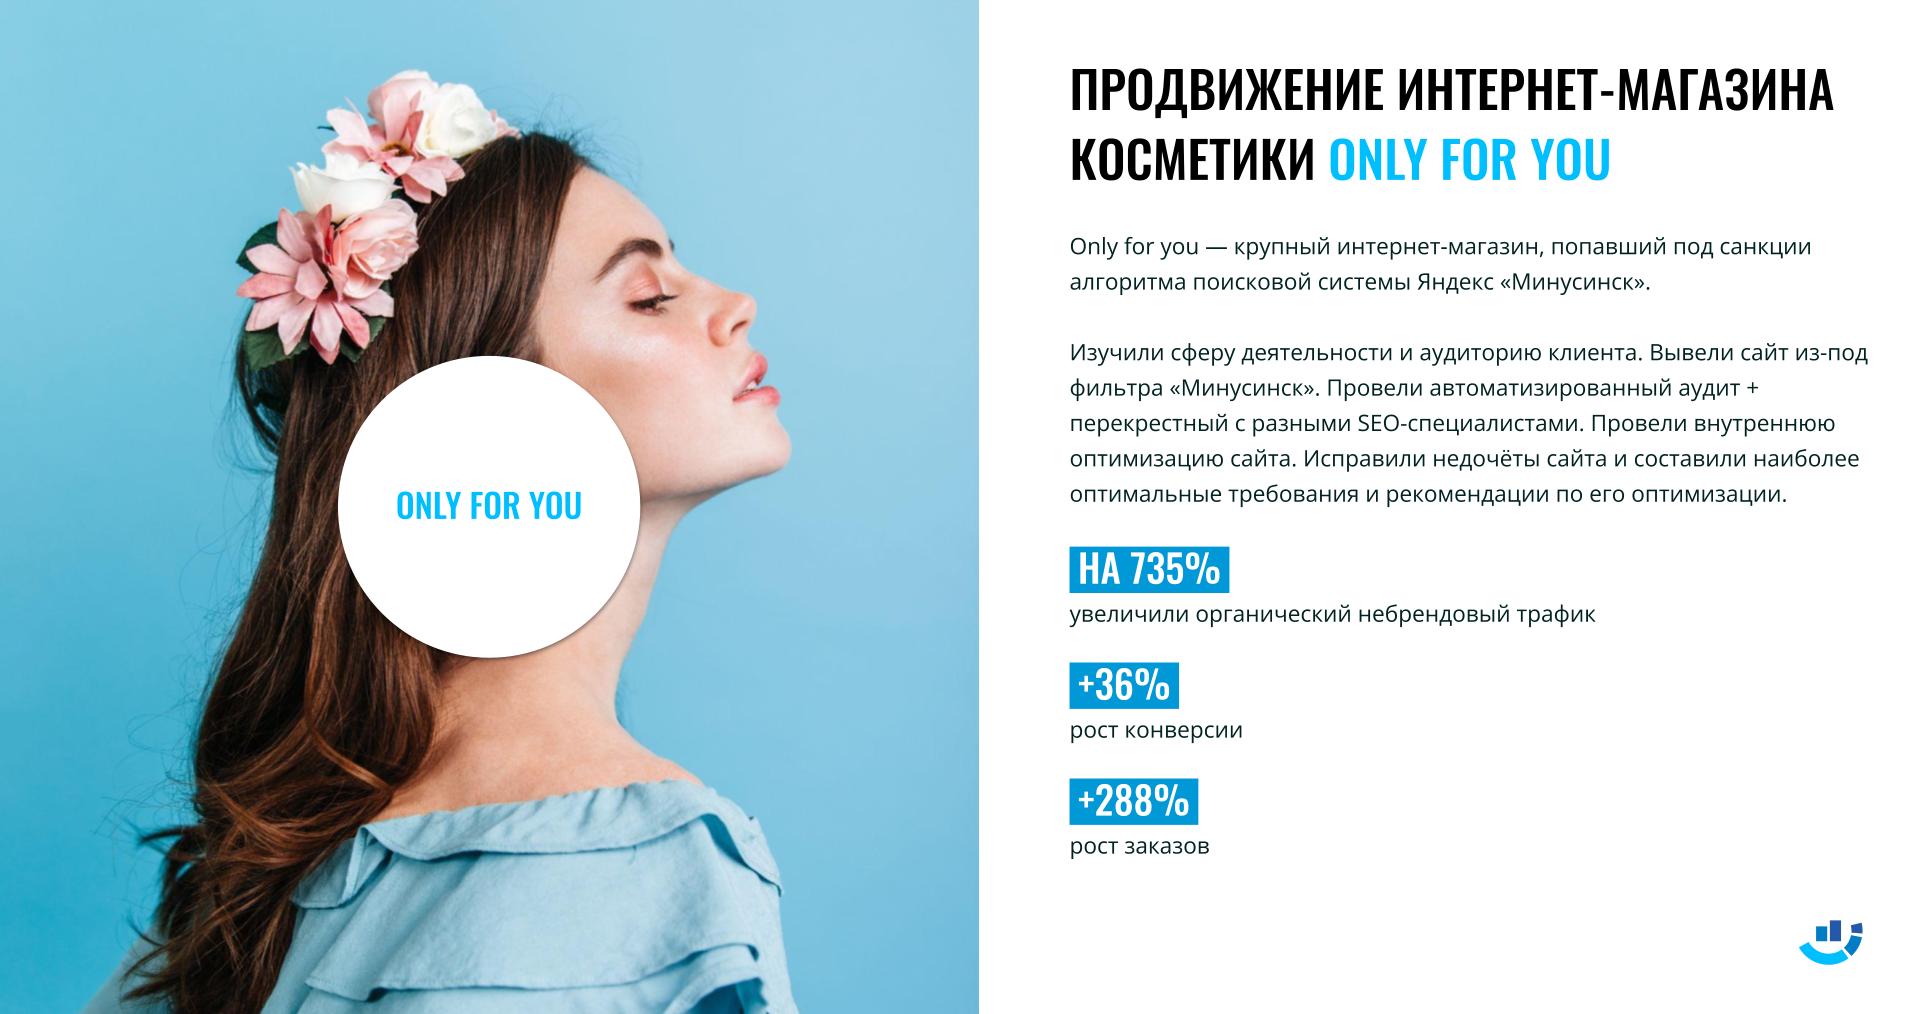 [Кейс] Косметика. Победили Яндекс «Минусинск» и подняли конверсию и трафик на сайт. Продвижение интернет-магазина косметики Only for you | only_for_you, seo, бьюти, интернет-магазин, интернет-магазин_косметики